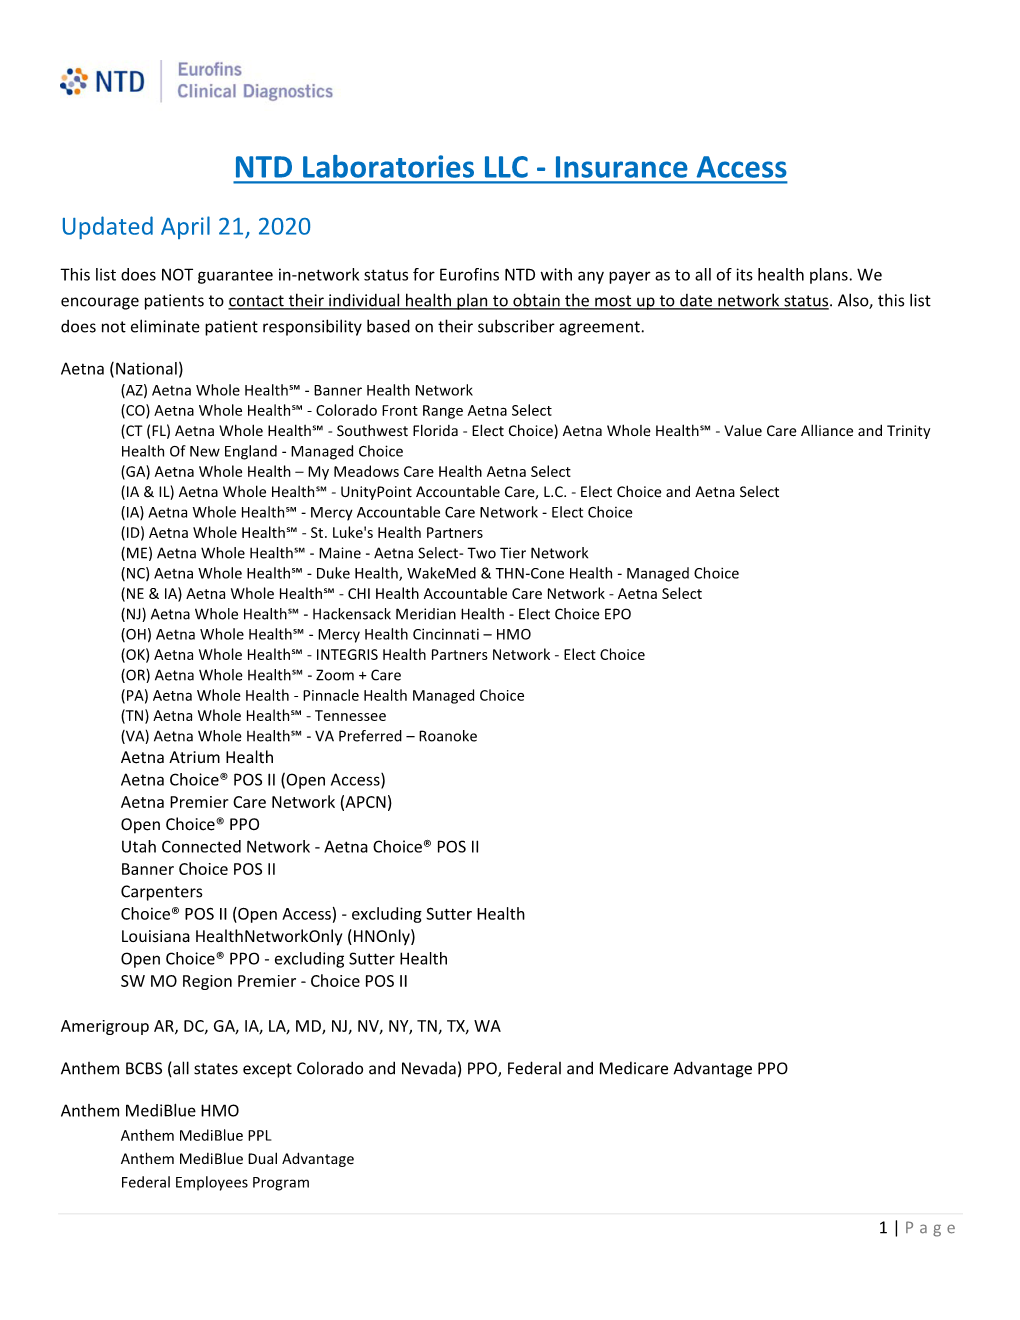 NTD Laboratories LLC - Insurance Access